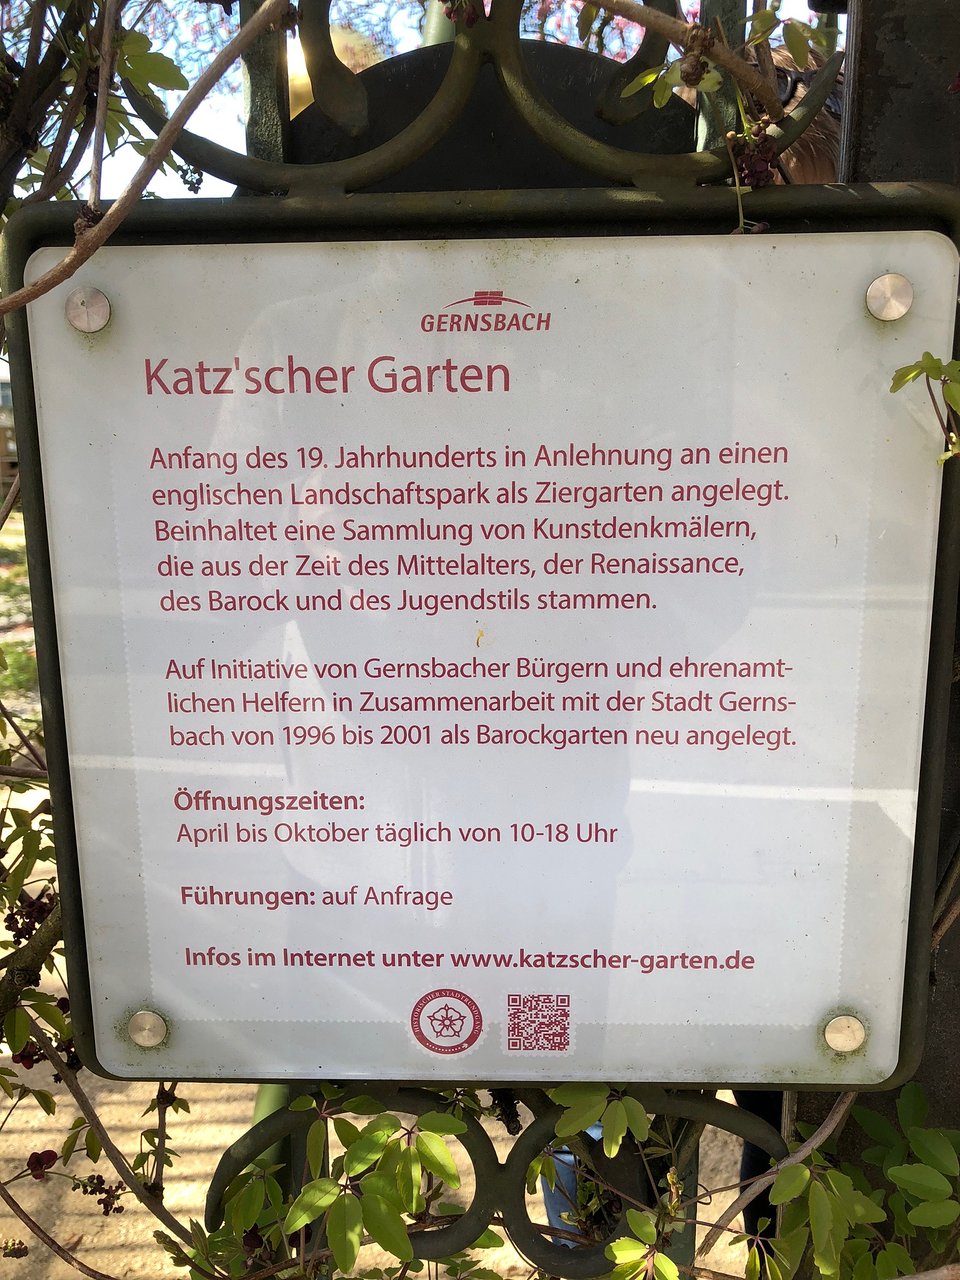 Internet Im Garten Luxus Der Katz Sche Garten Gernsbach 2020 All You Need to Know